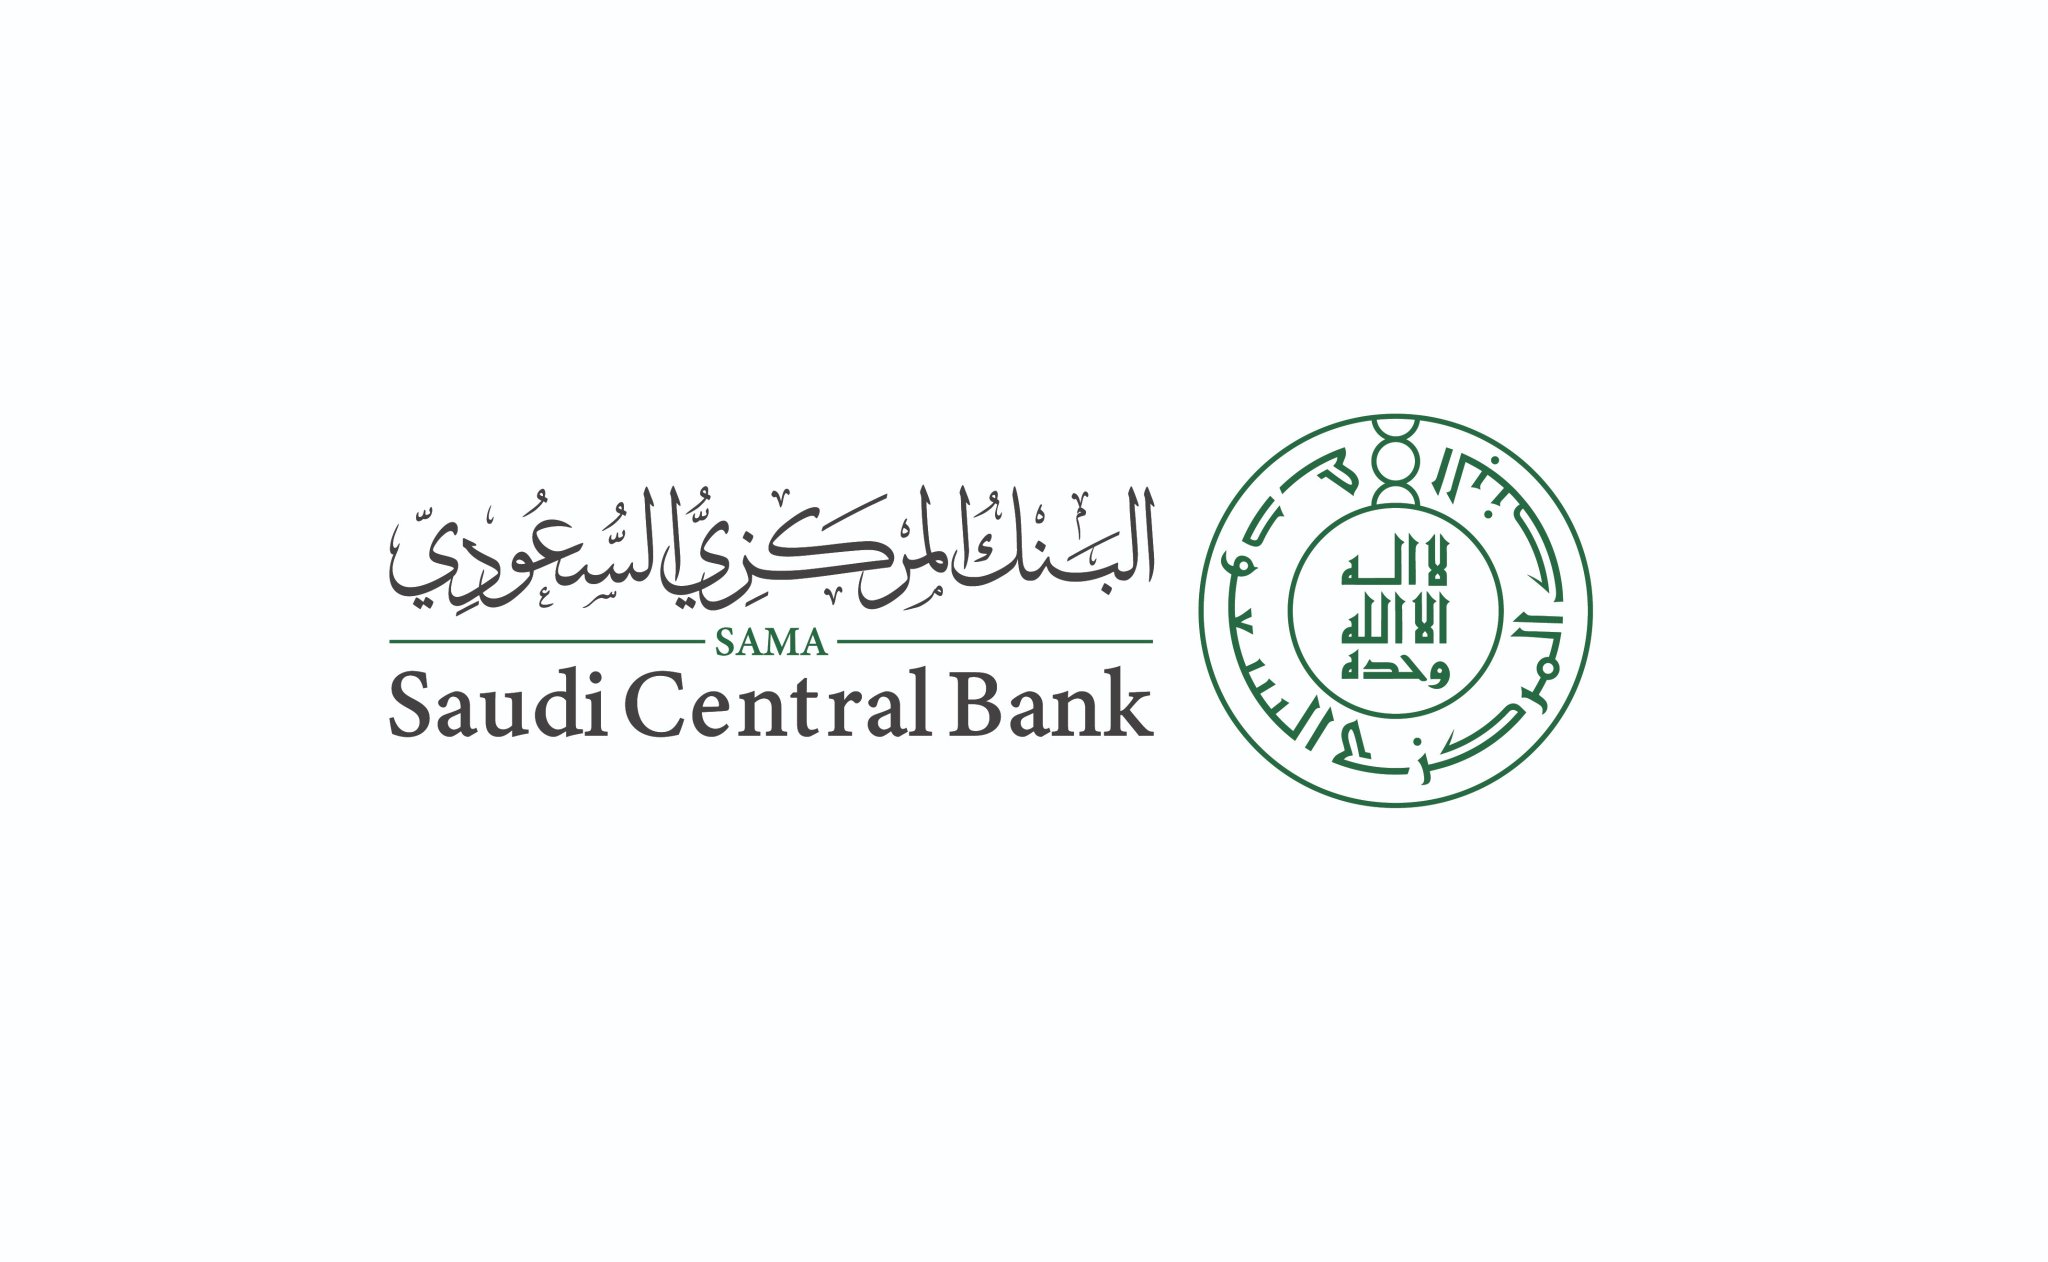 بعد تعديل نظام البنك السعودي المركزي.. الاحتفاظ بالأوراق النقدية والعملات المعدنية بمسمى مؤسسة النقد